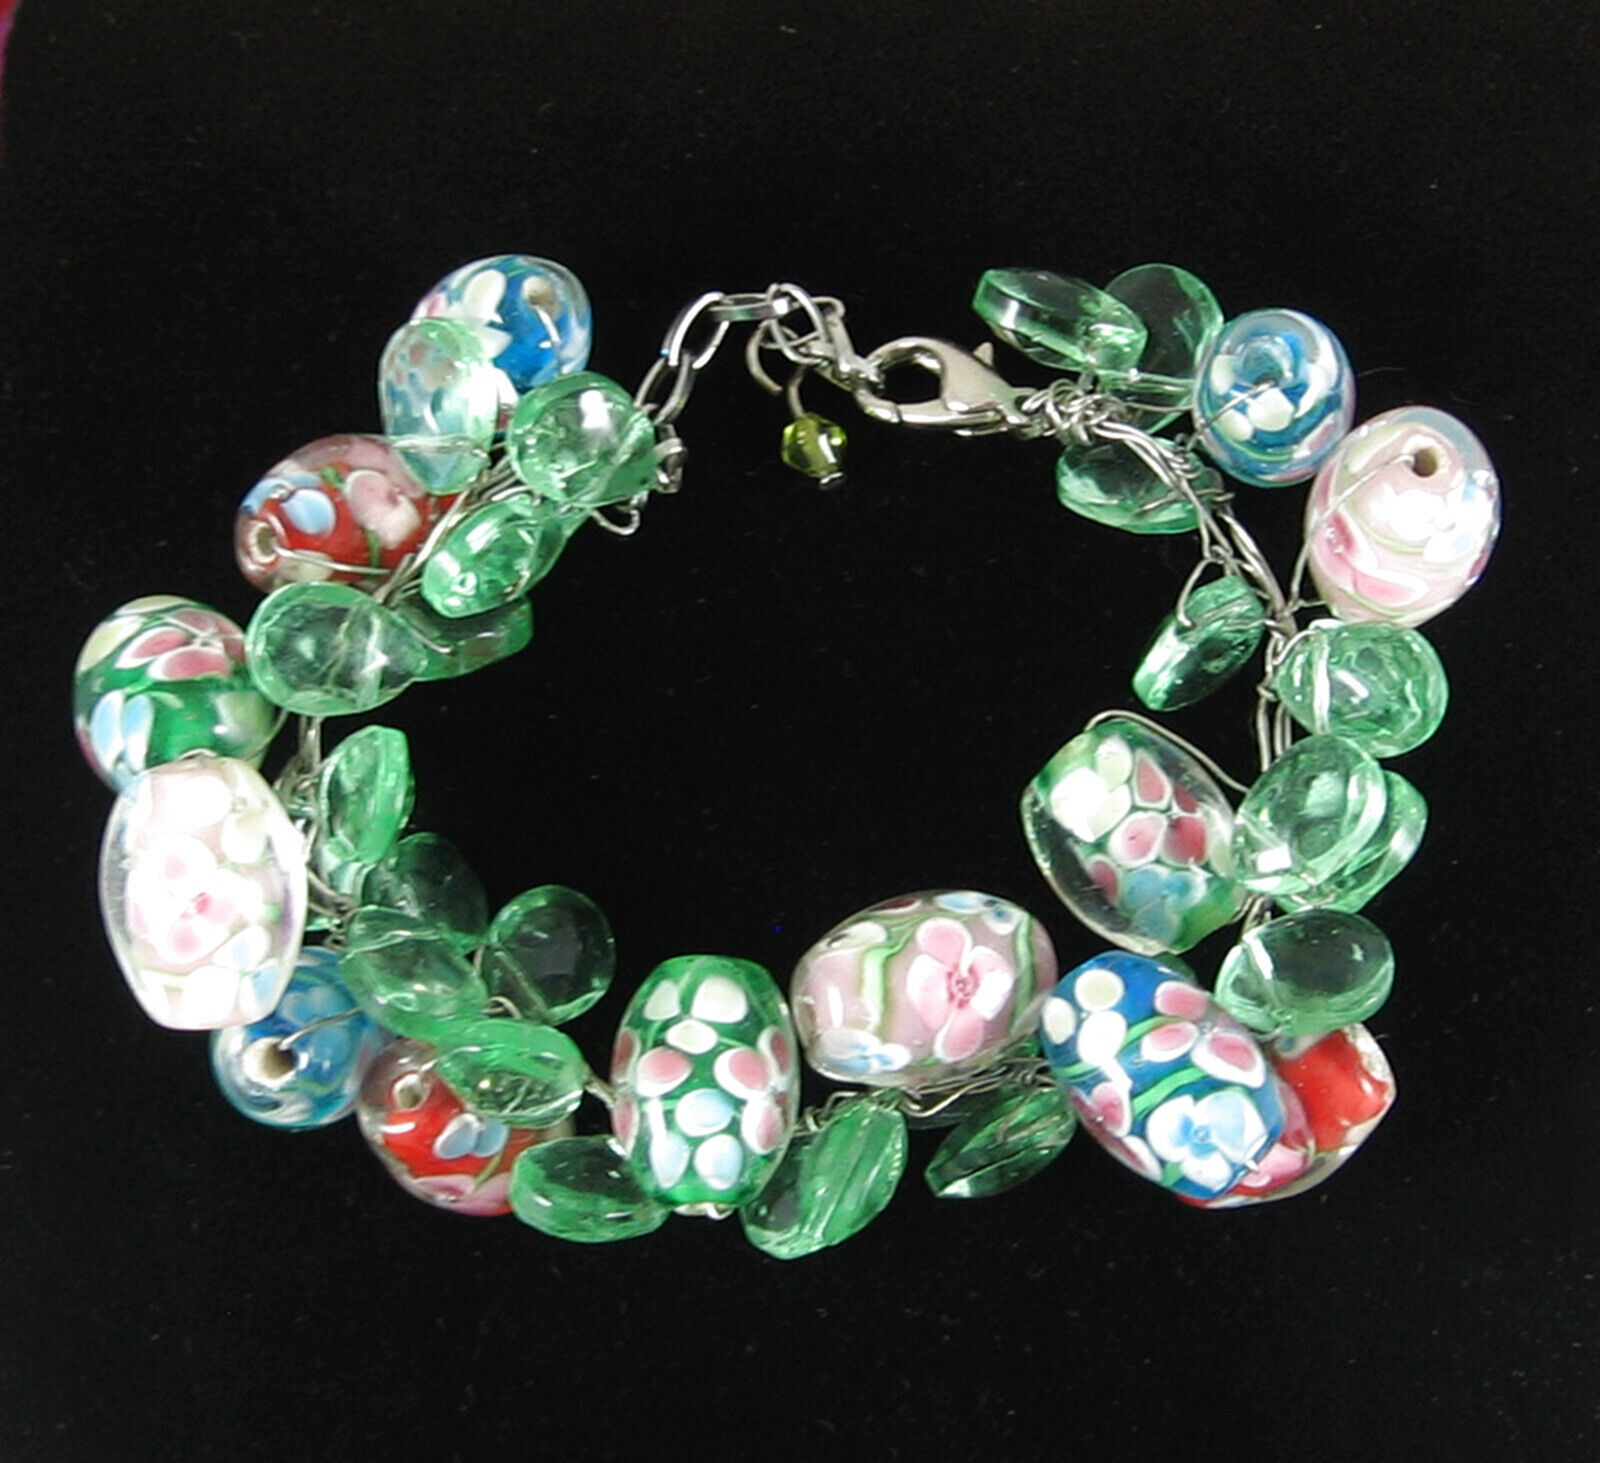 Primary image for Green ART GLASS FLOWER BEADS Vintage Bracelet Floral Cased Teardrop Handcrafted